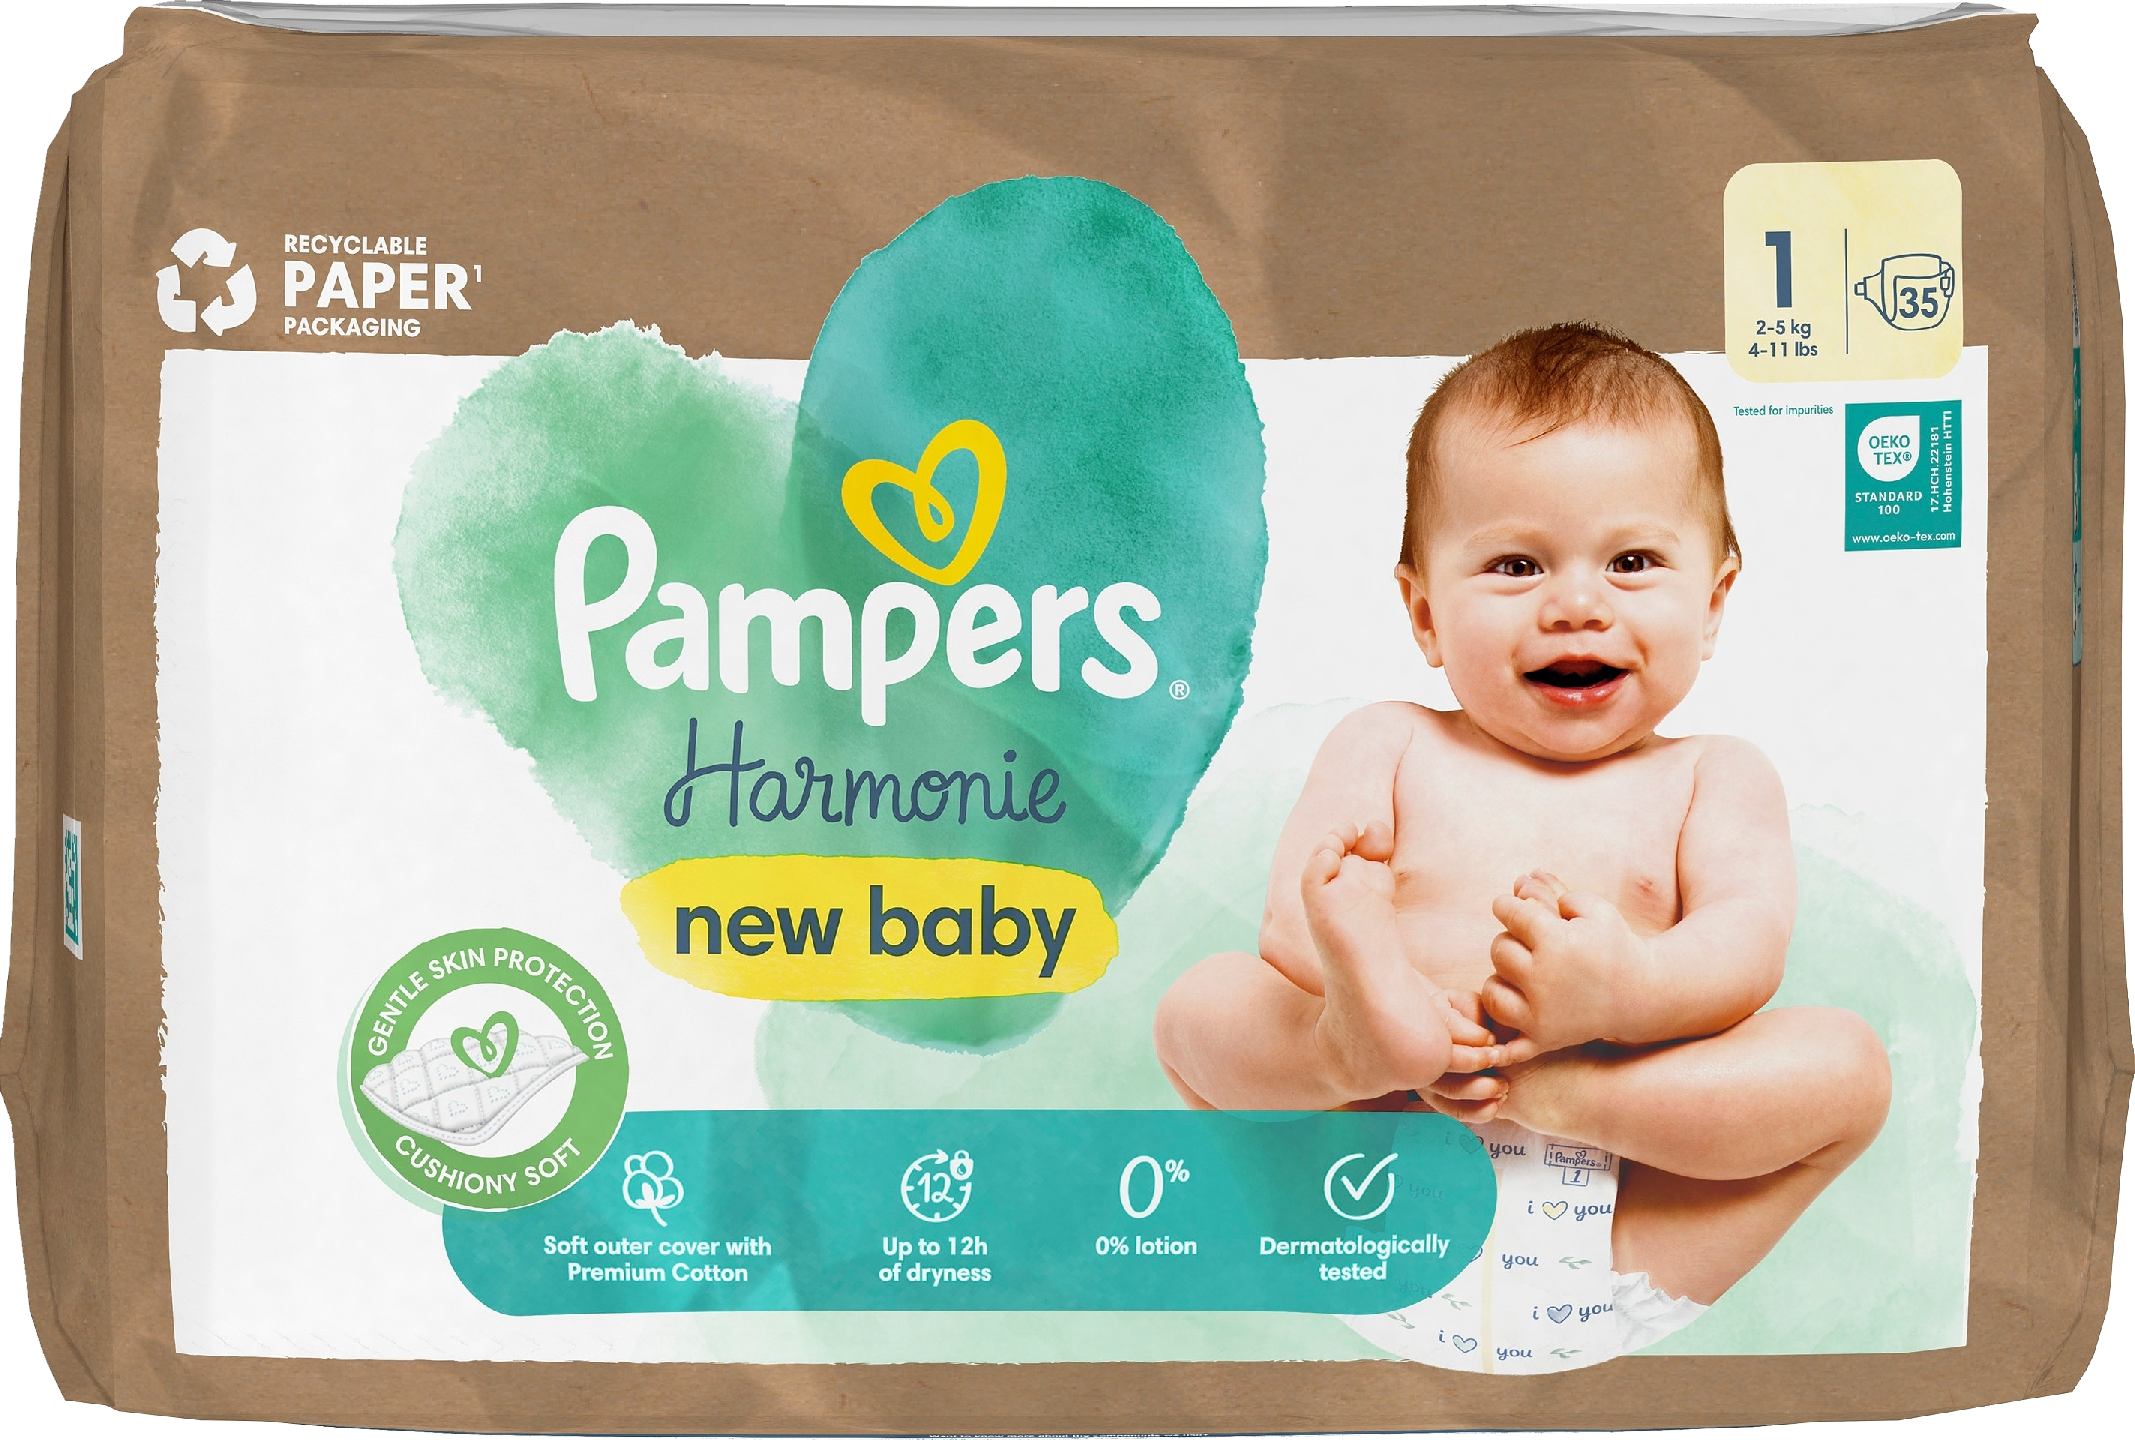 Pampers Harmonie new baby S1 2-5 kg 35 kpl vaippa